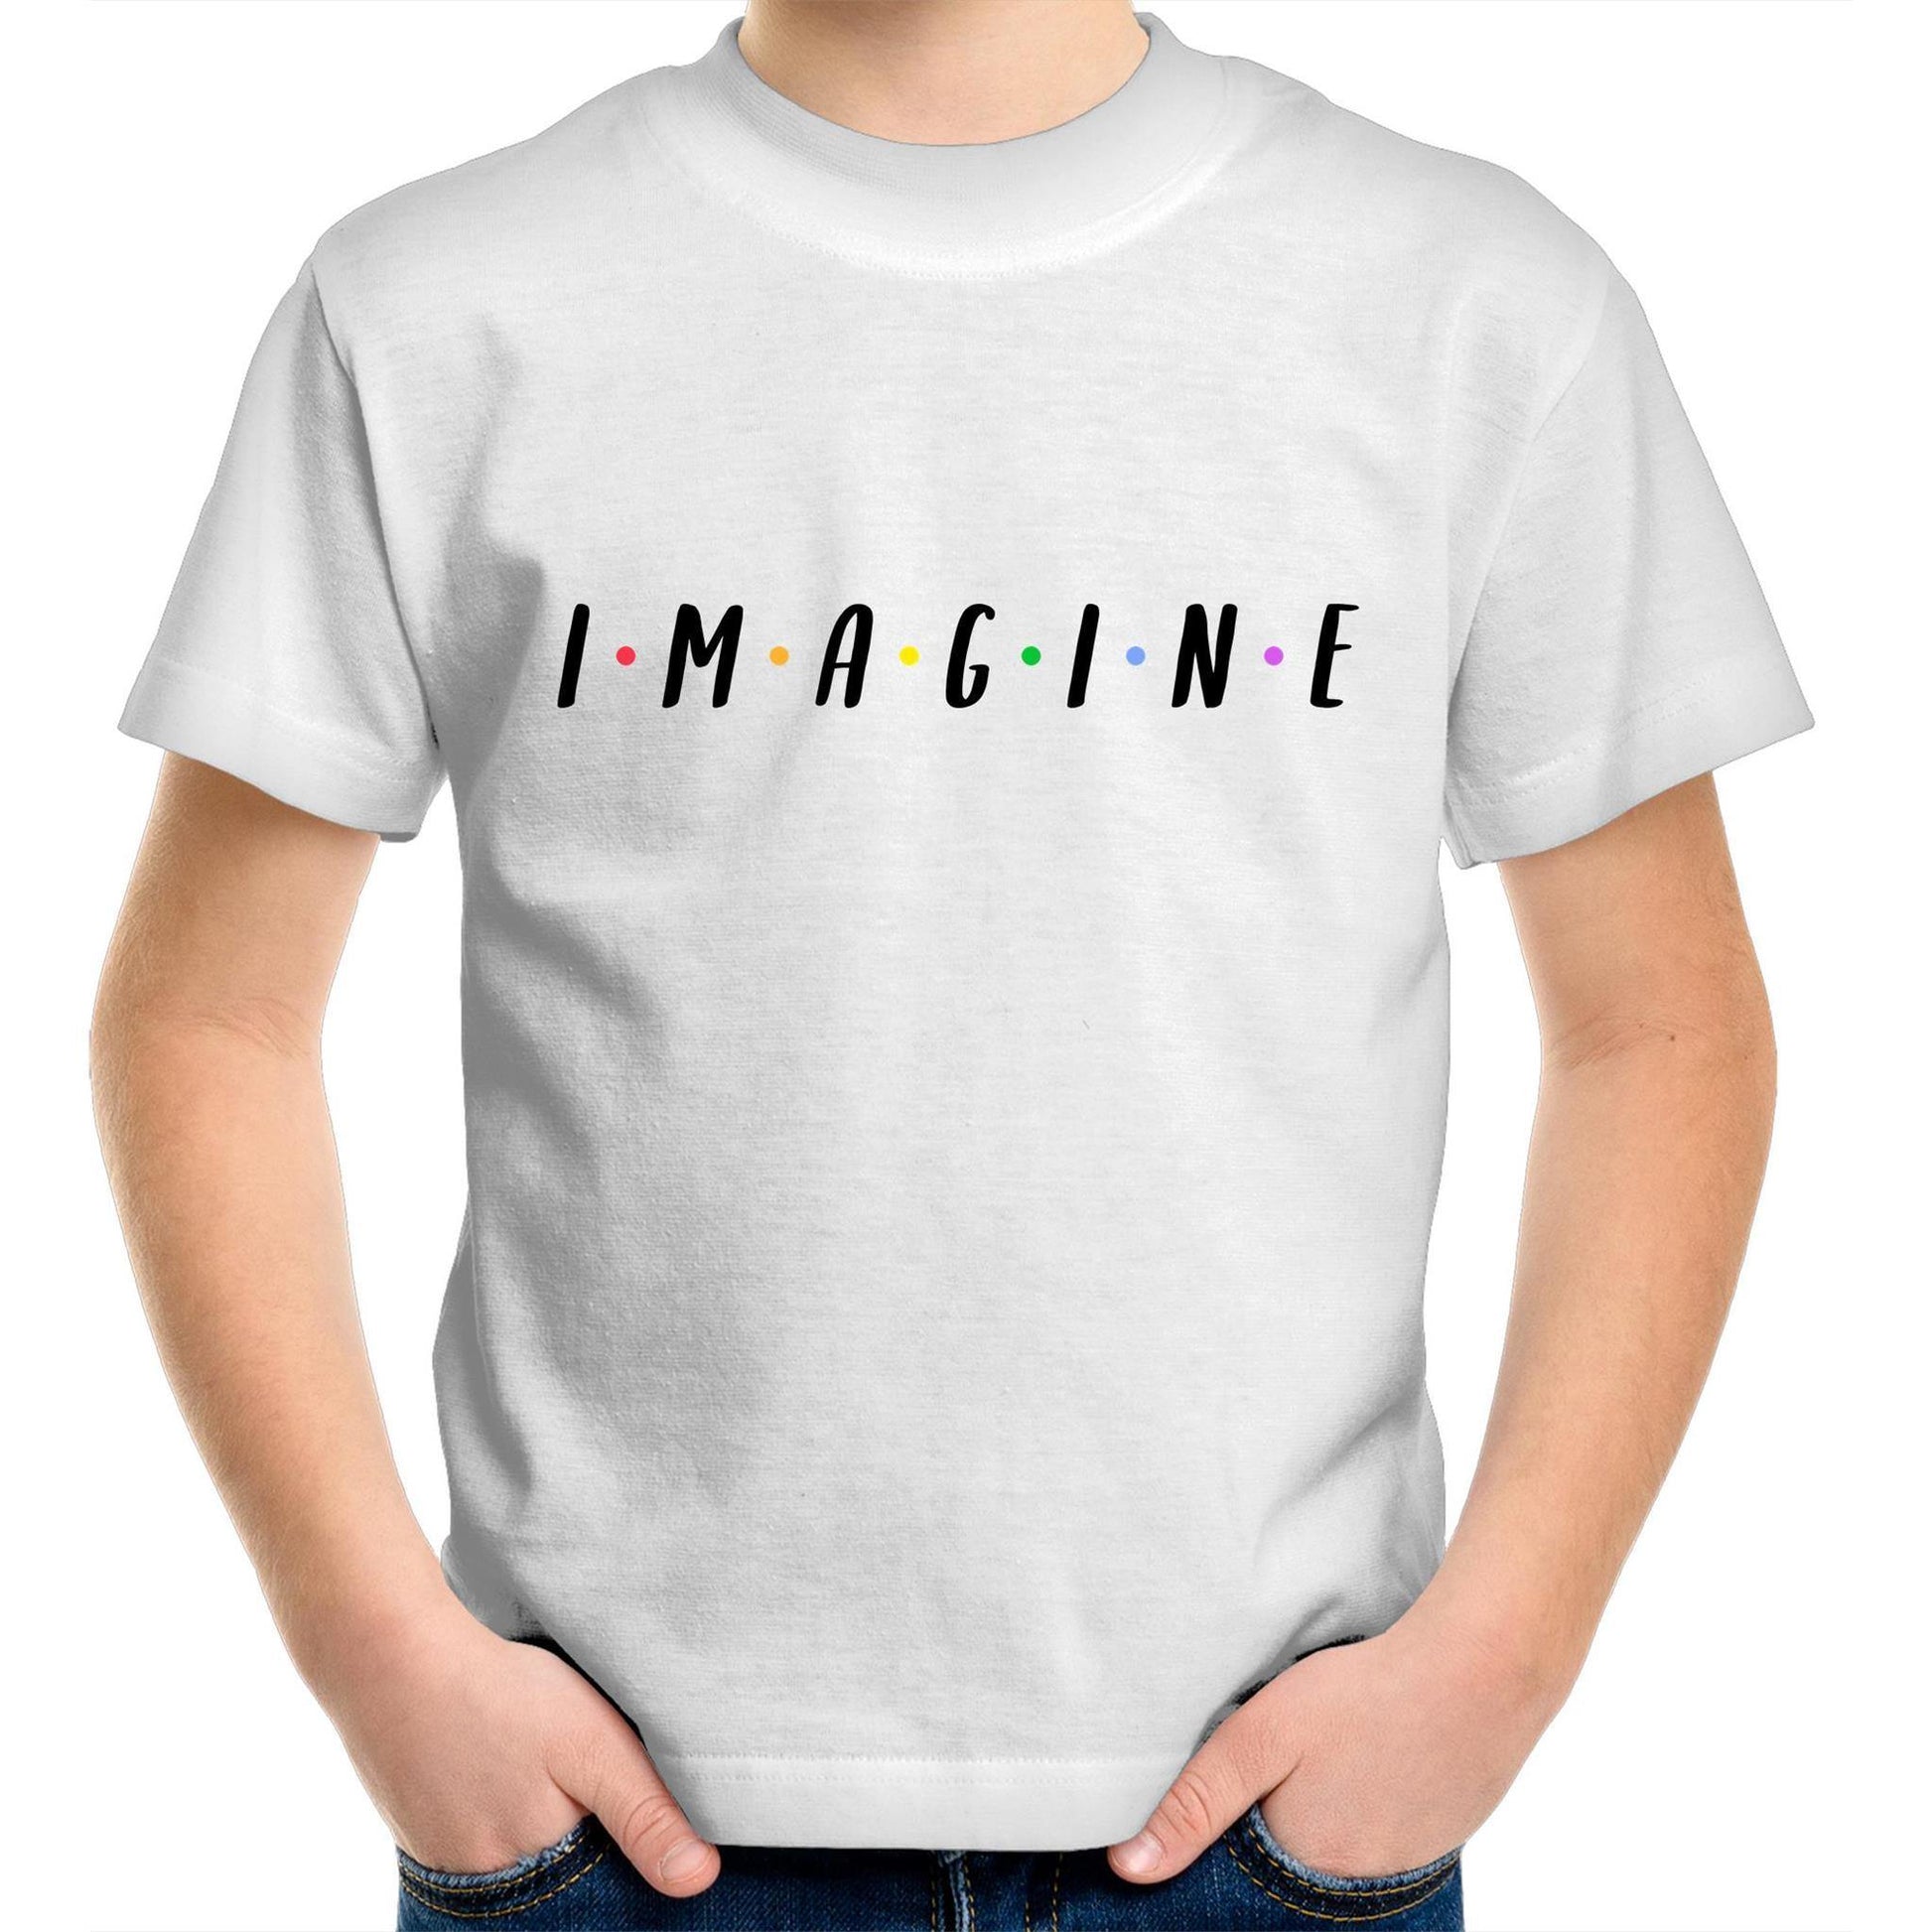 Imagine - Kids Youth Crew T-Shirt White Kids Youth T-shirt